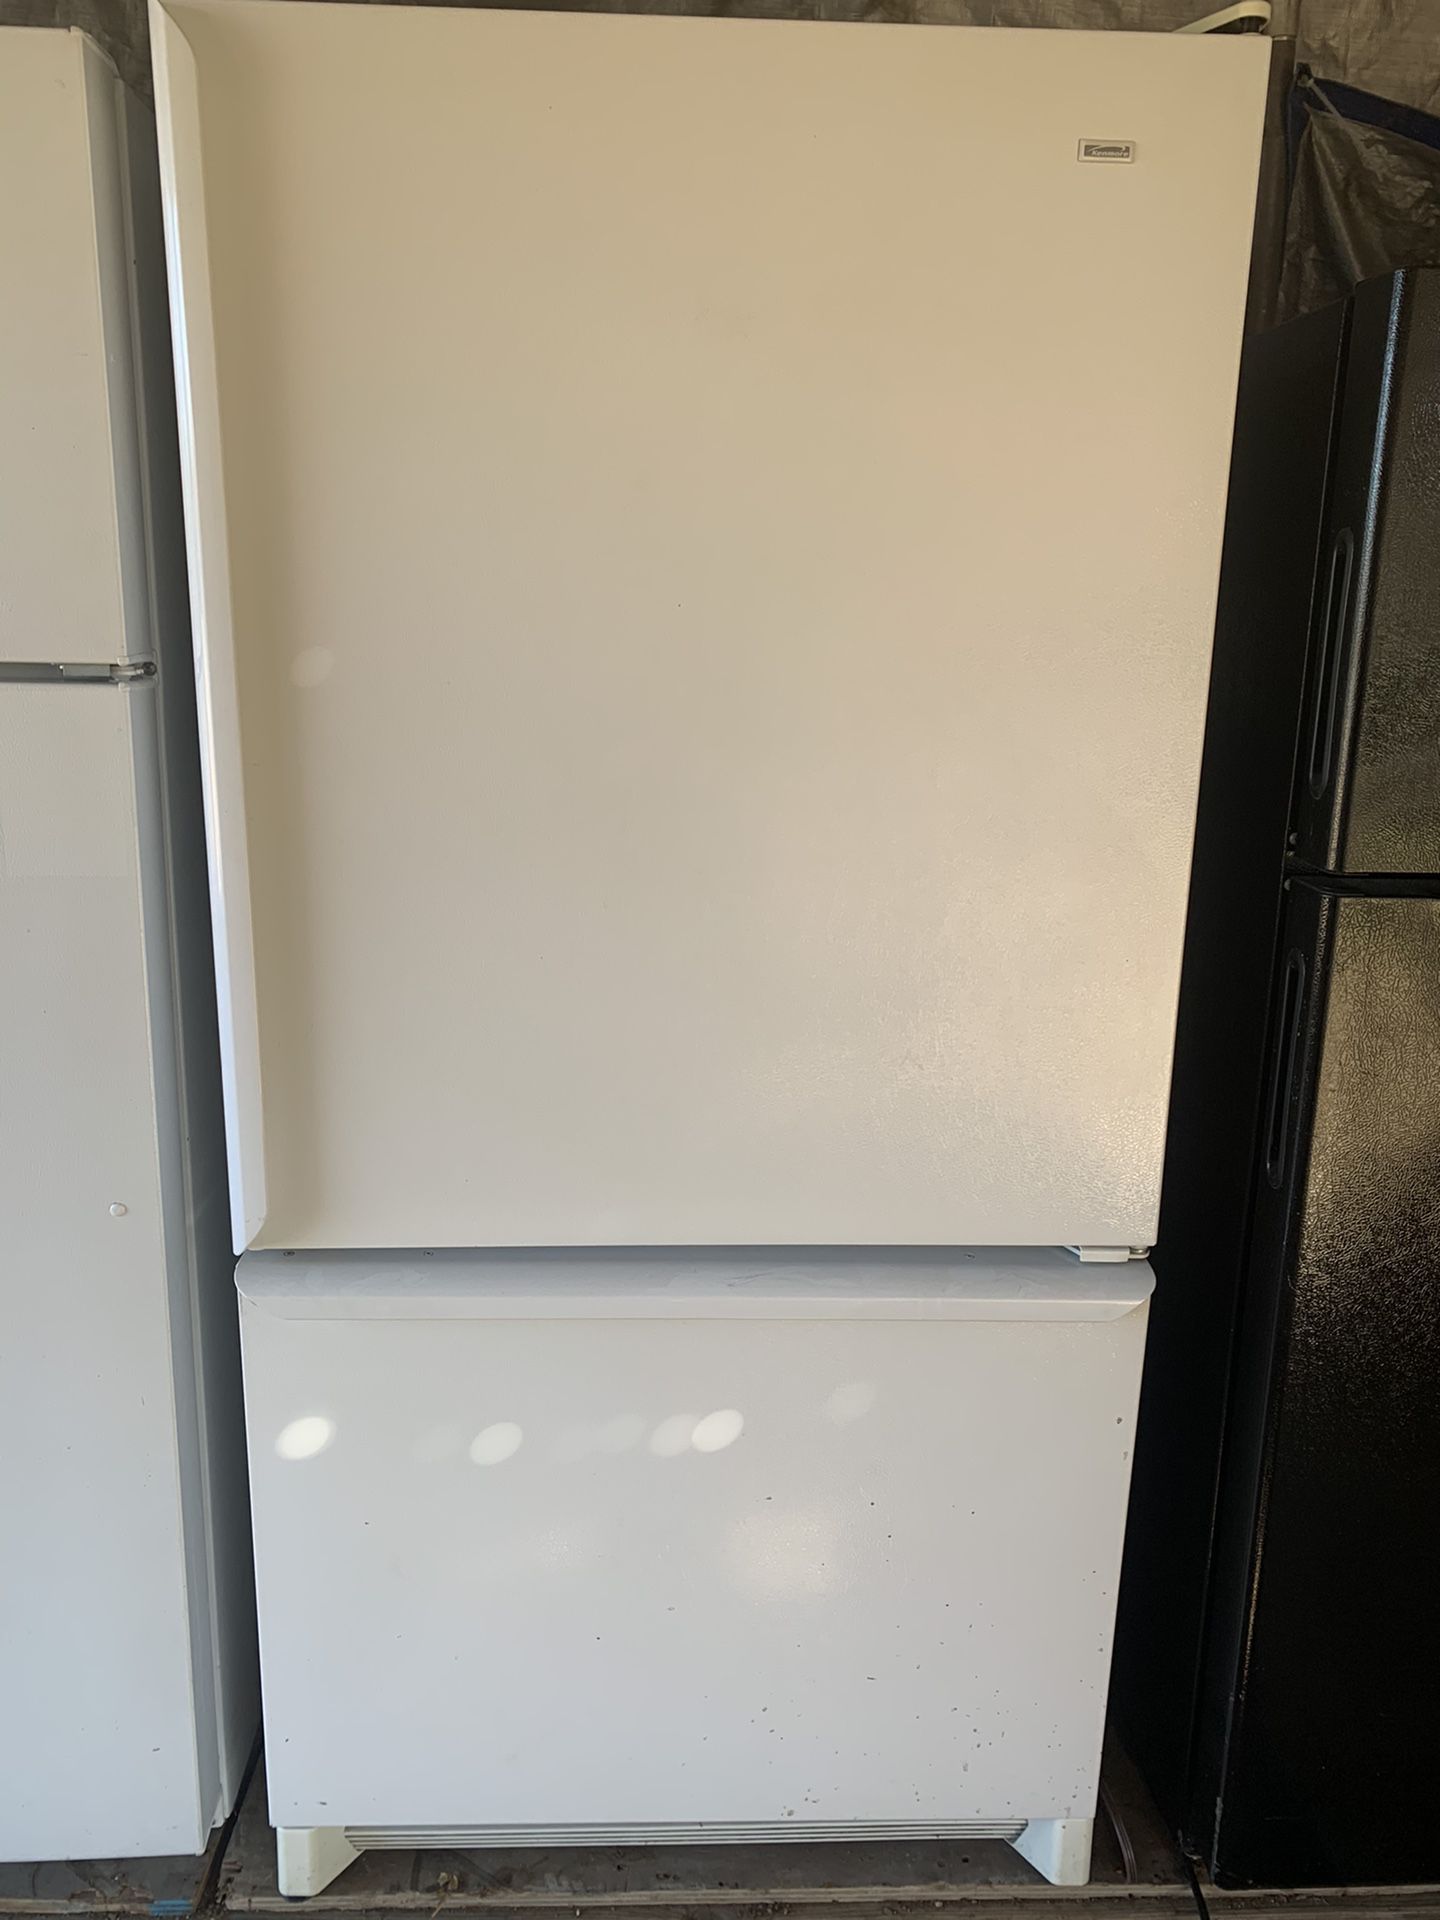 Kenmore Bottom Freezer Refrigerator